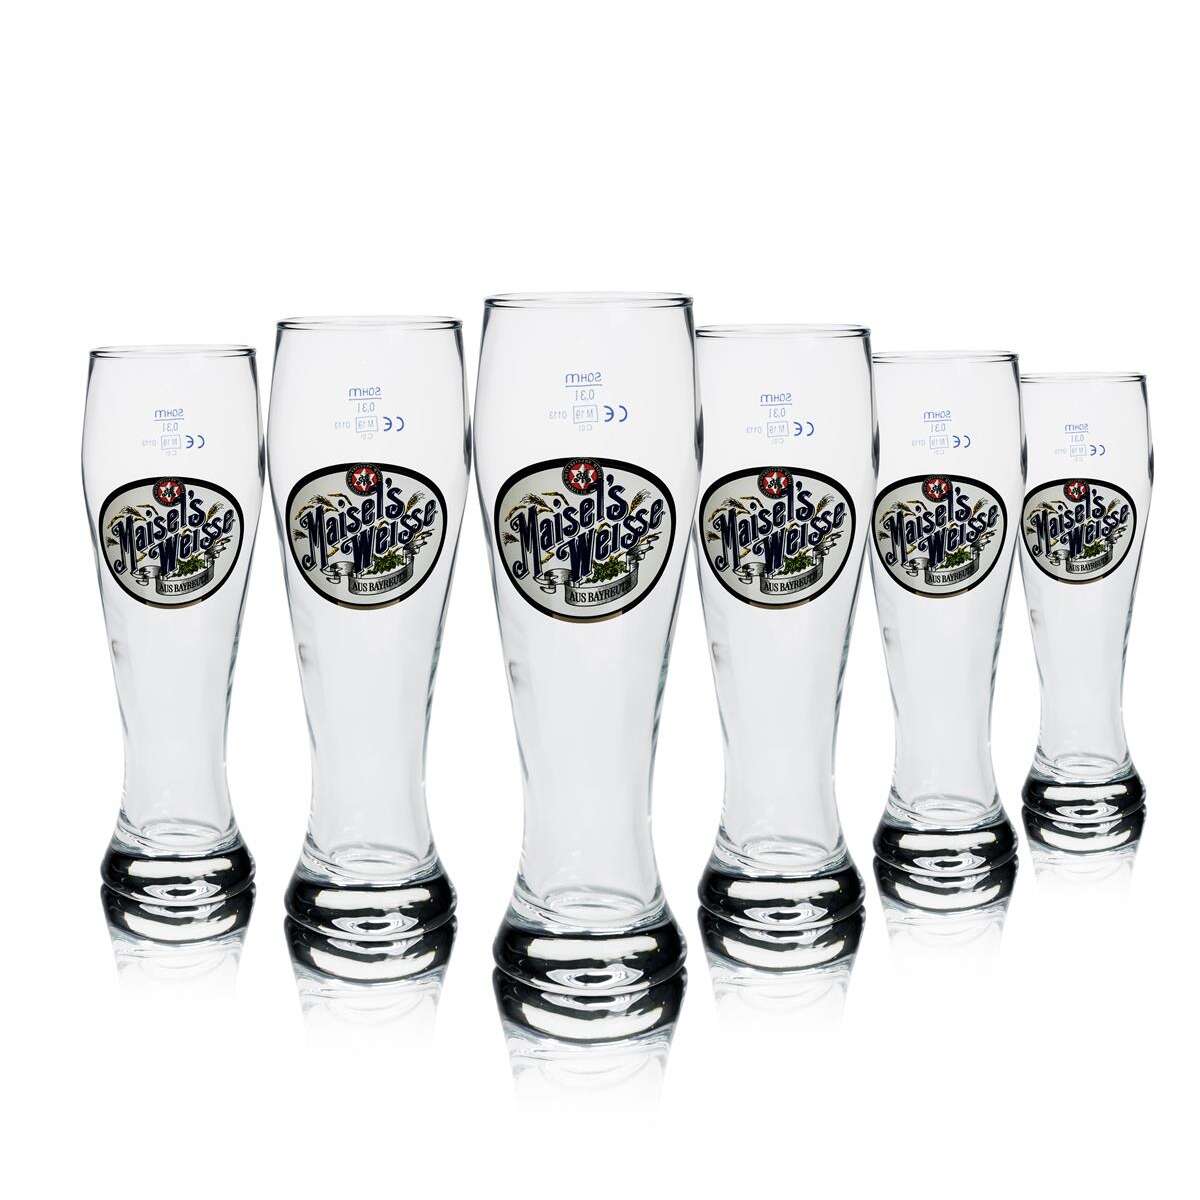 Maisels Weisse Brauerei, Glas / Gläser Bierglas, Weizen